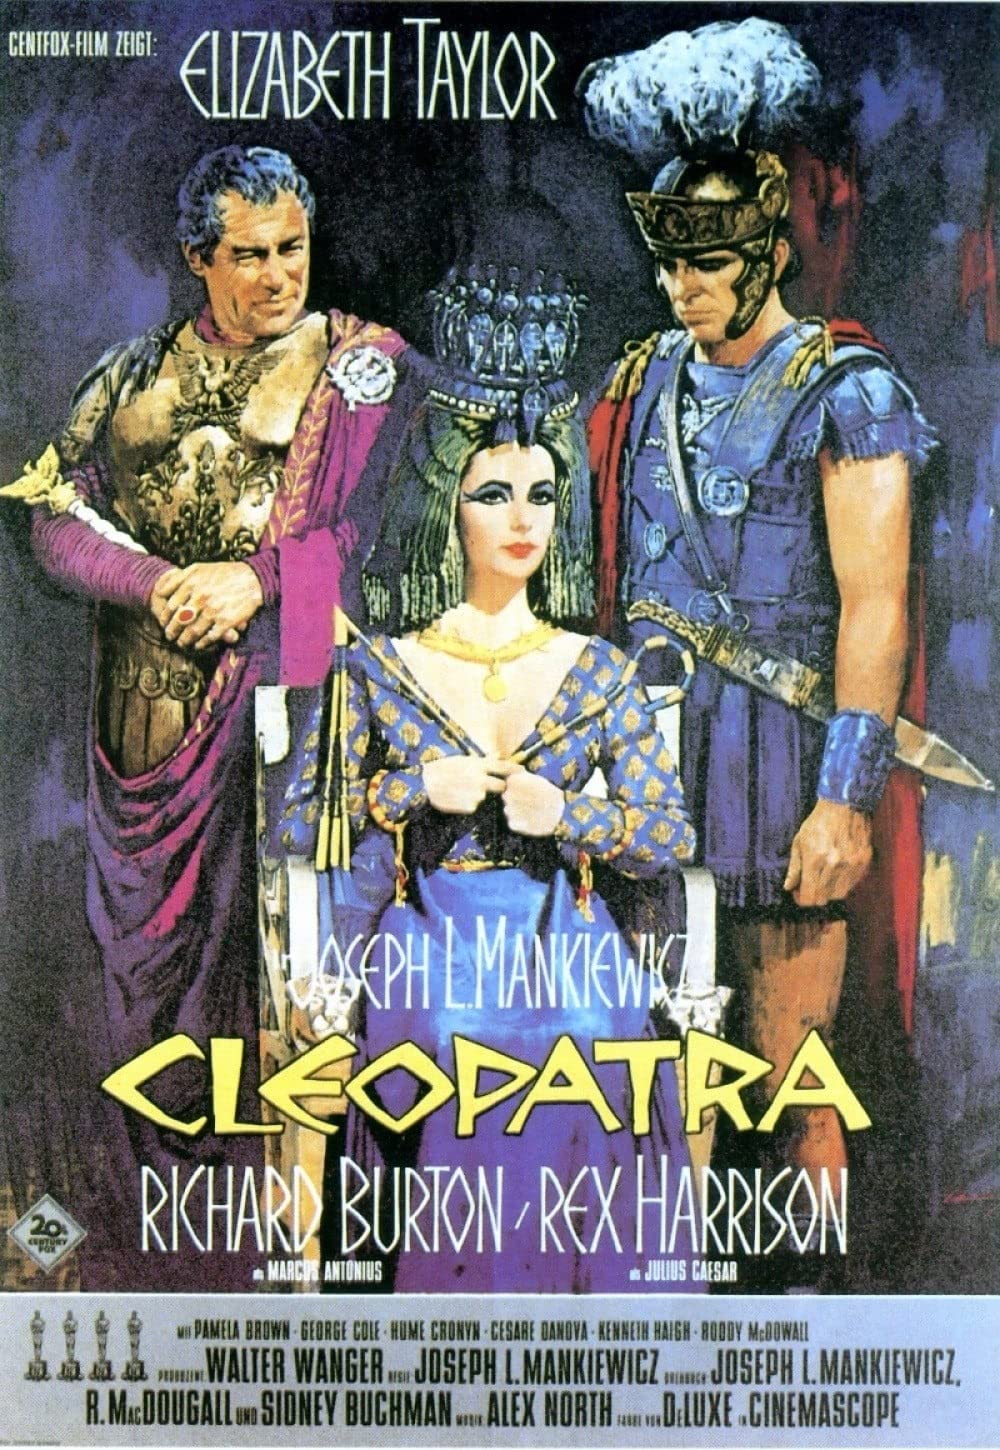 Filmbeschreibung zu Cleopatra (1963)